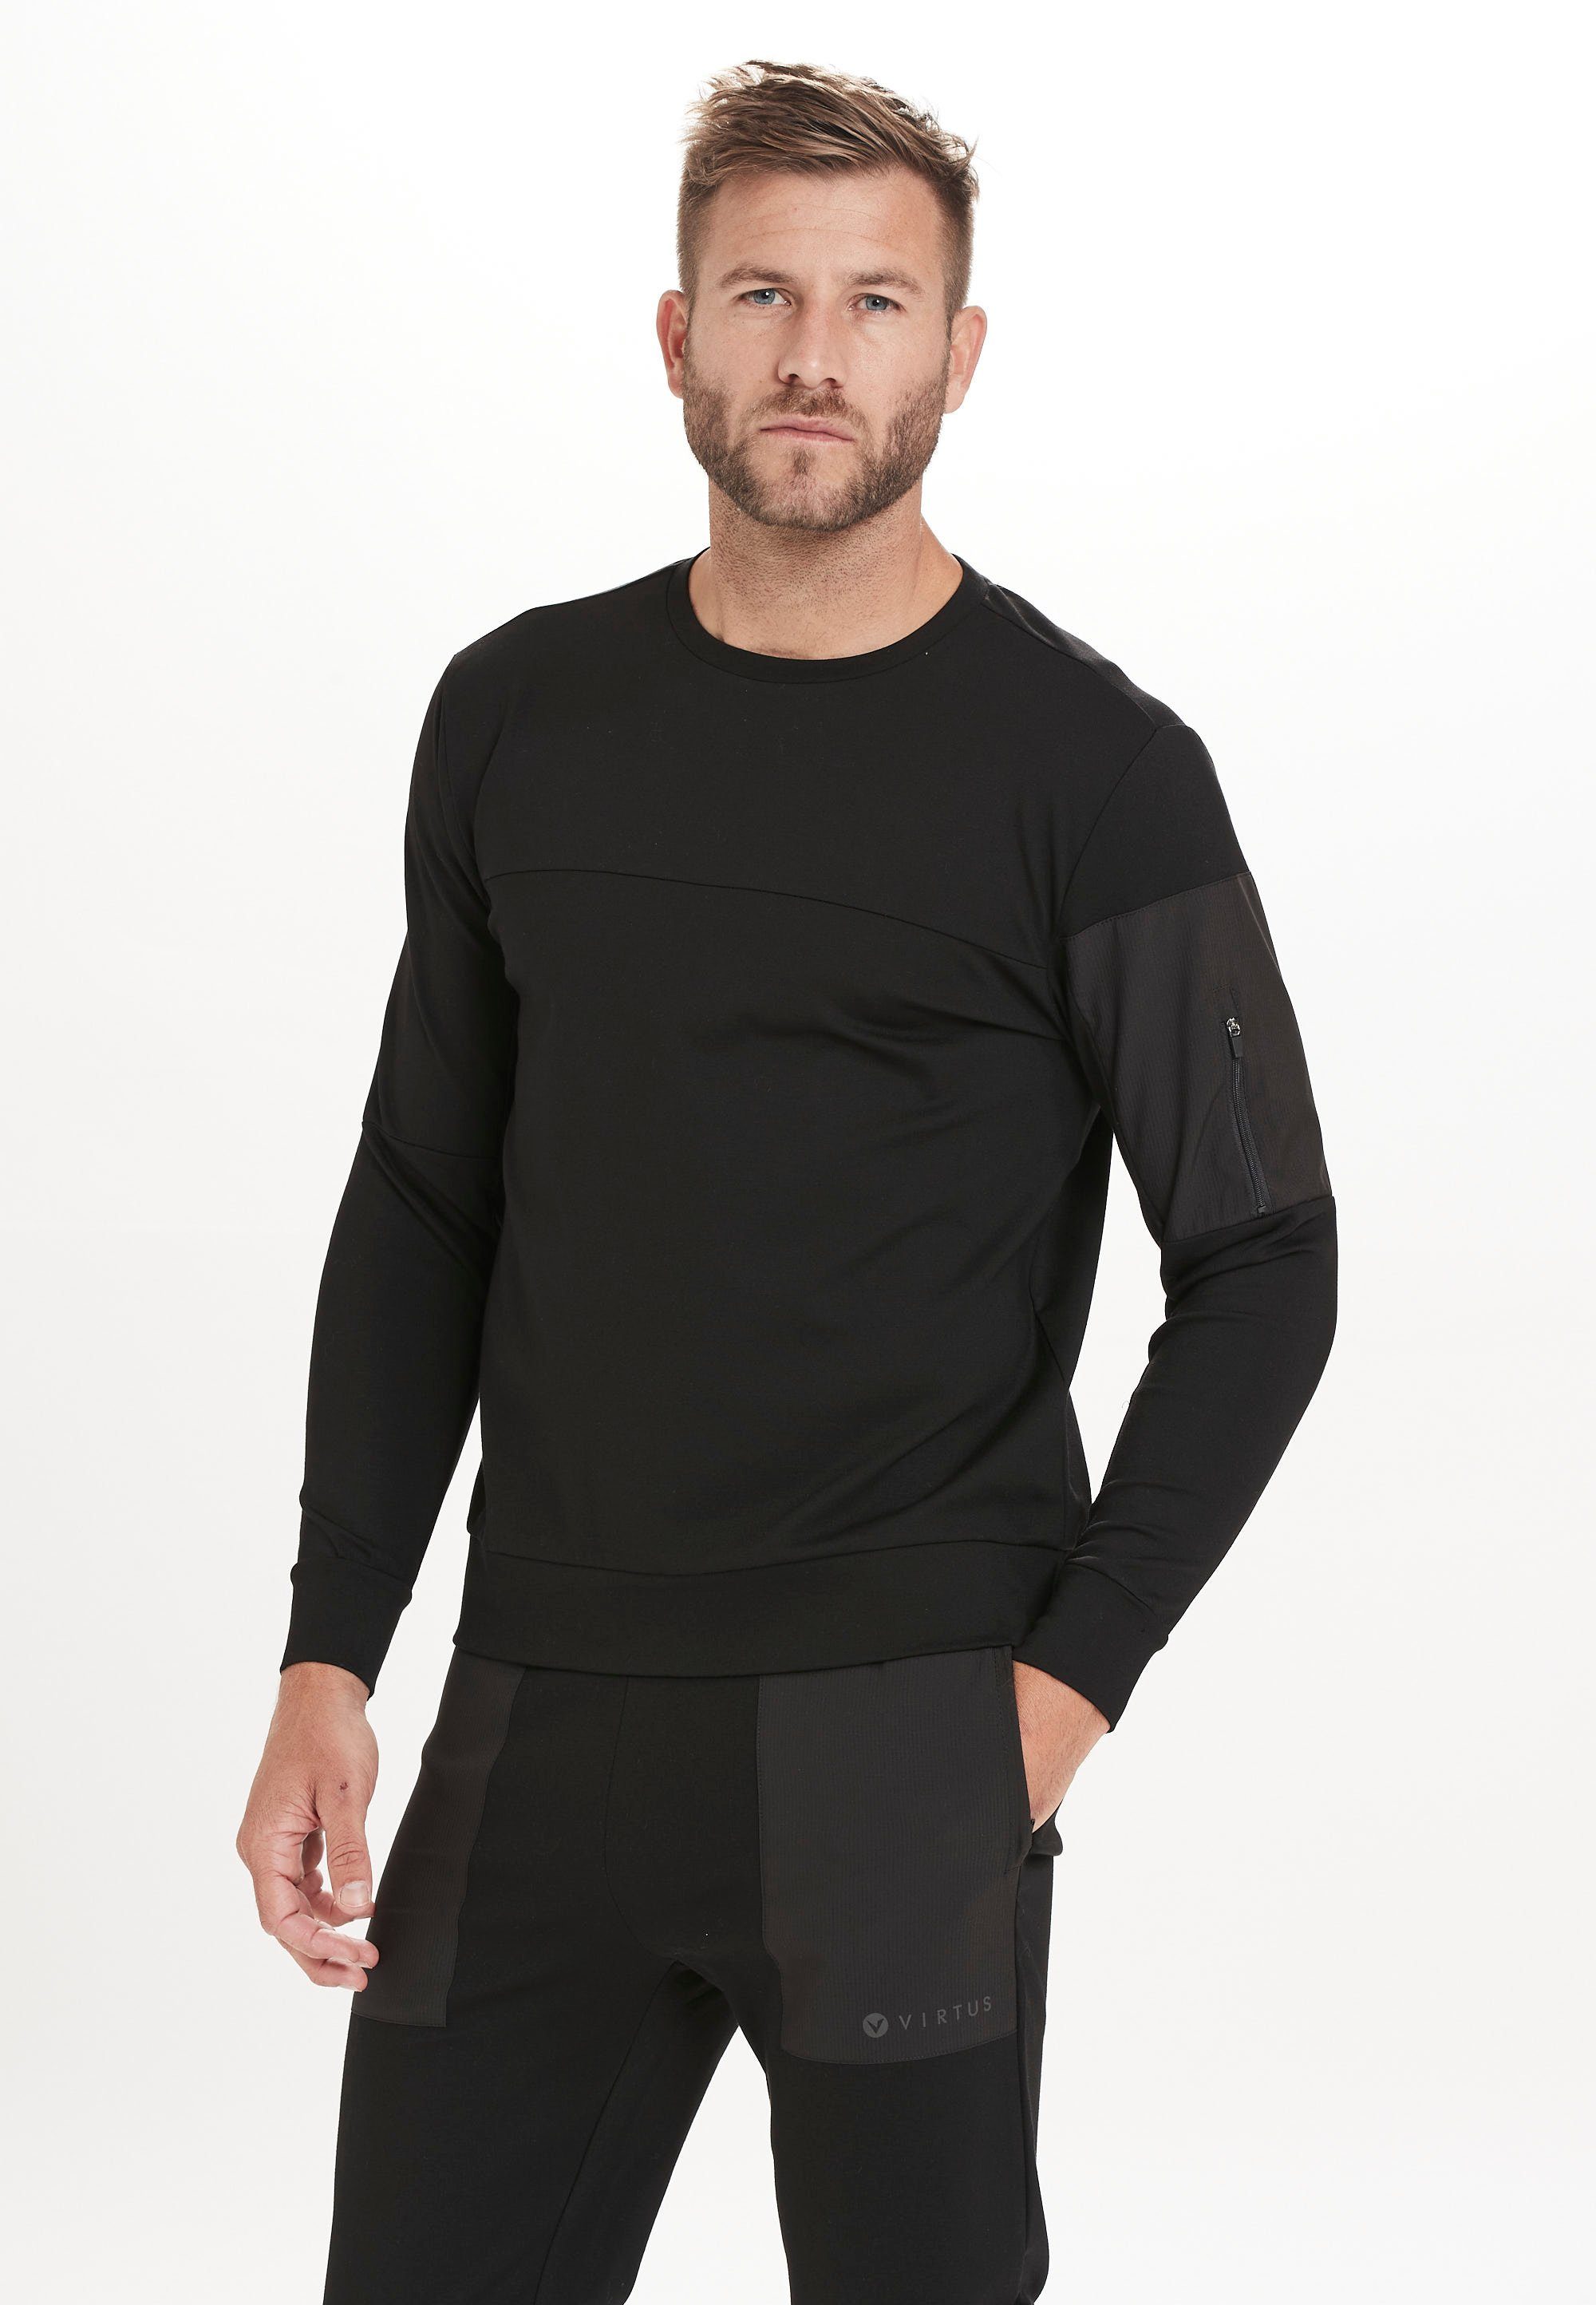 Virtus Sweatshirt Bisosco mit praktischer Reißverschlusstasche schwarz